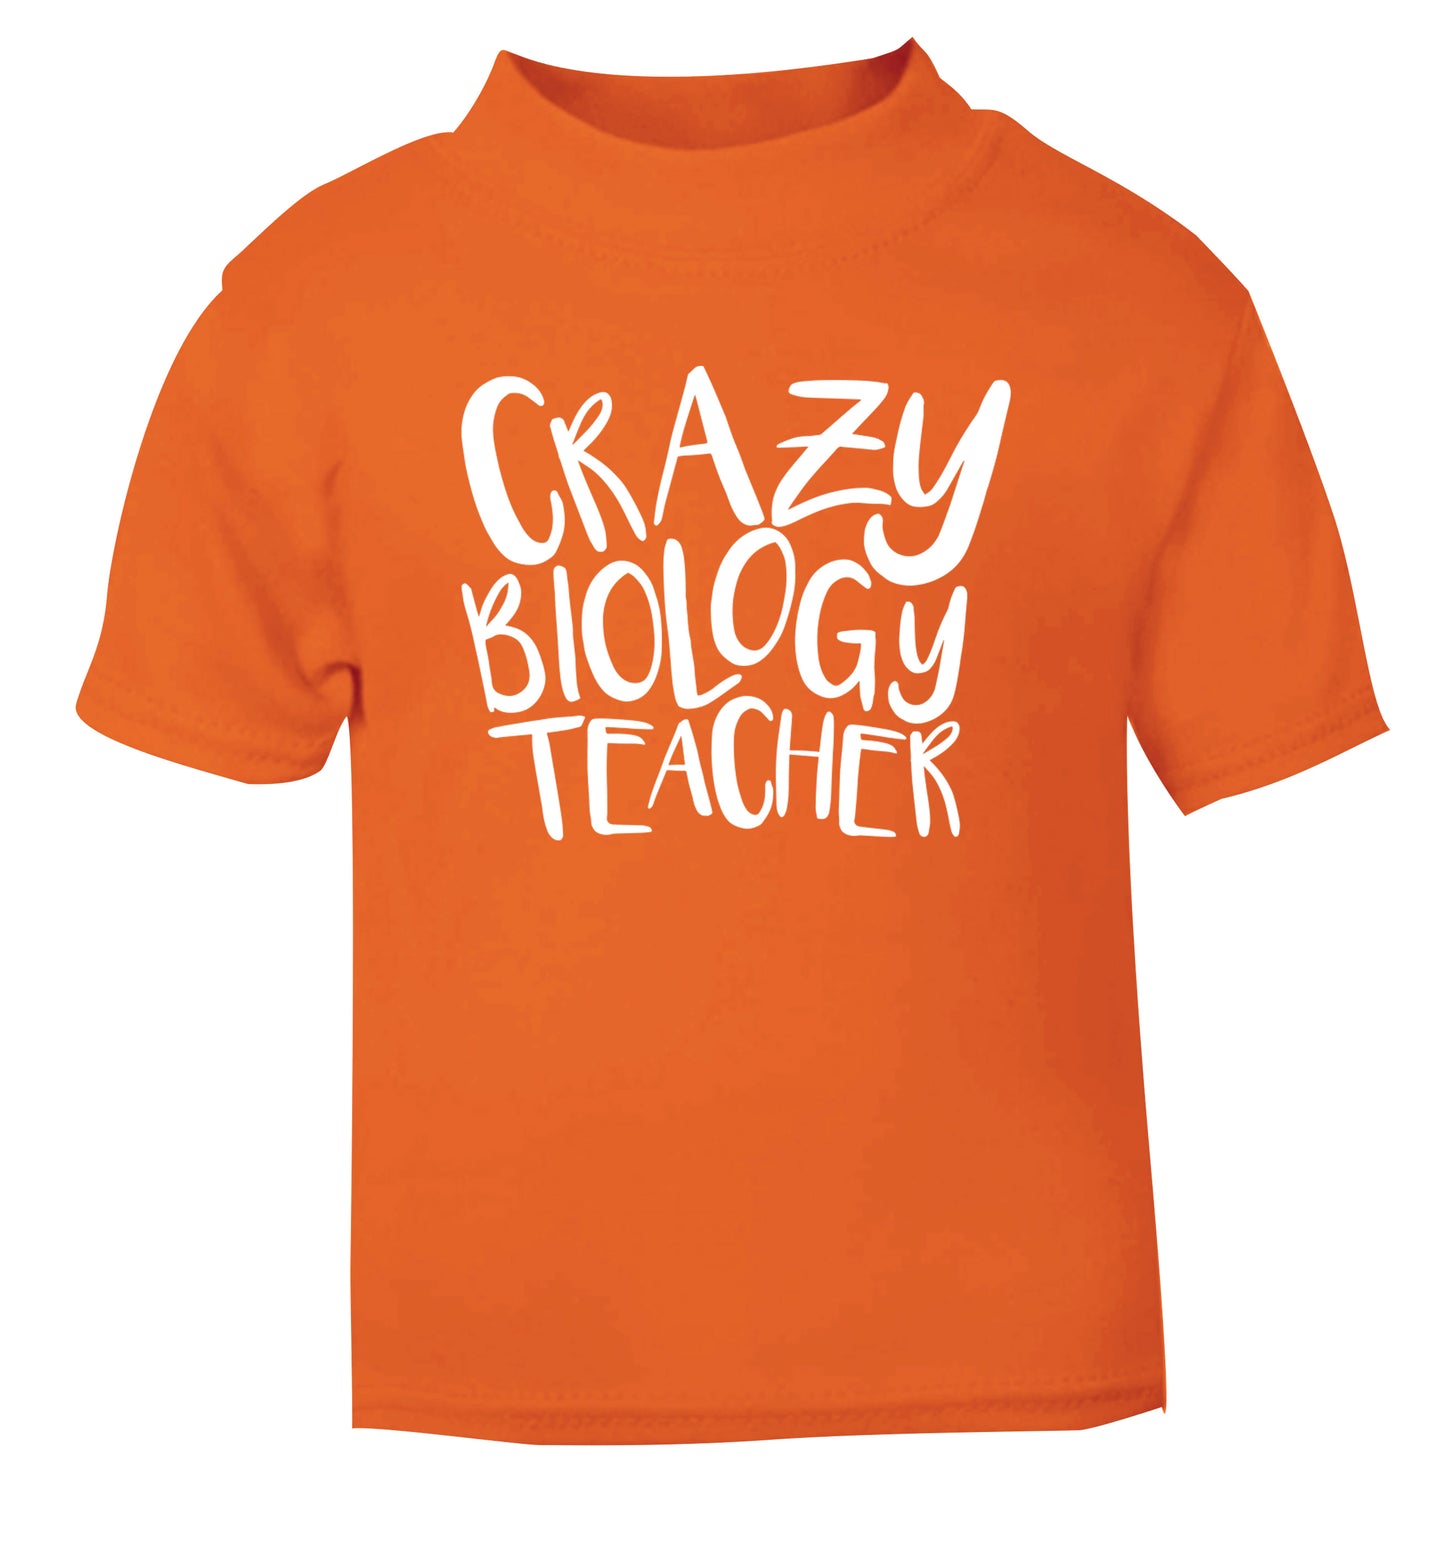 Crazy biology teacher orange Baby Toddler Tshirt 2 Years